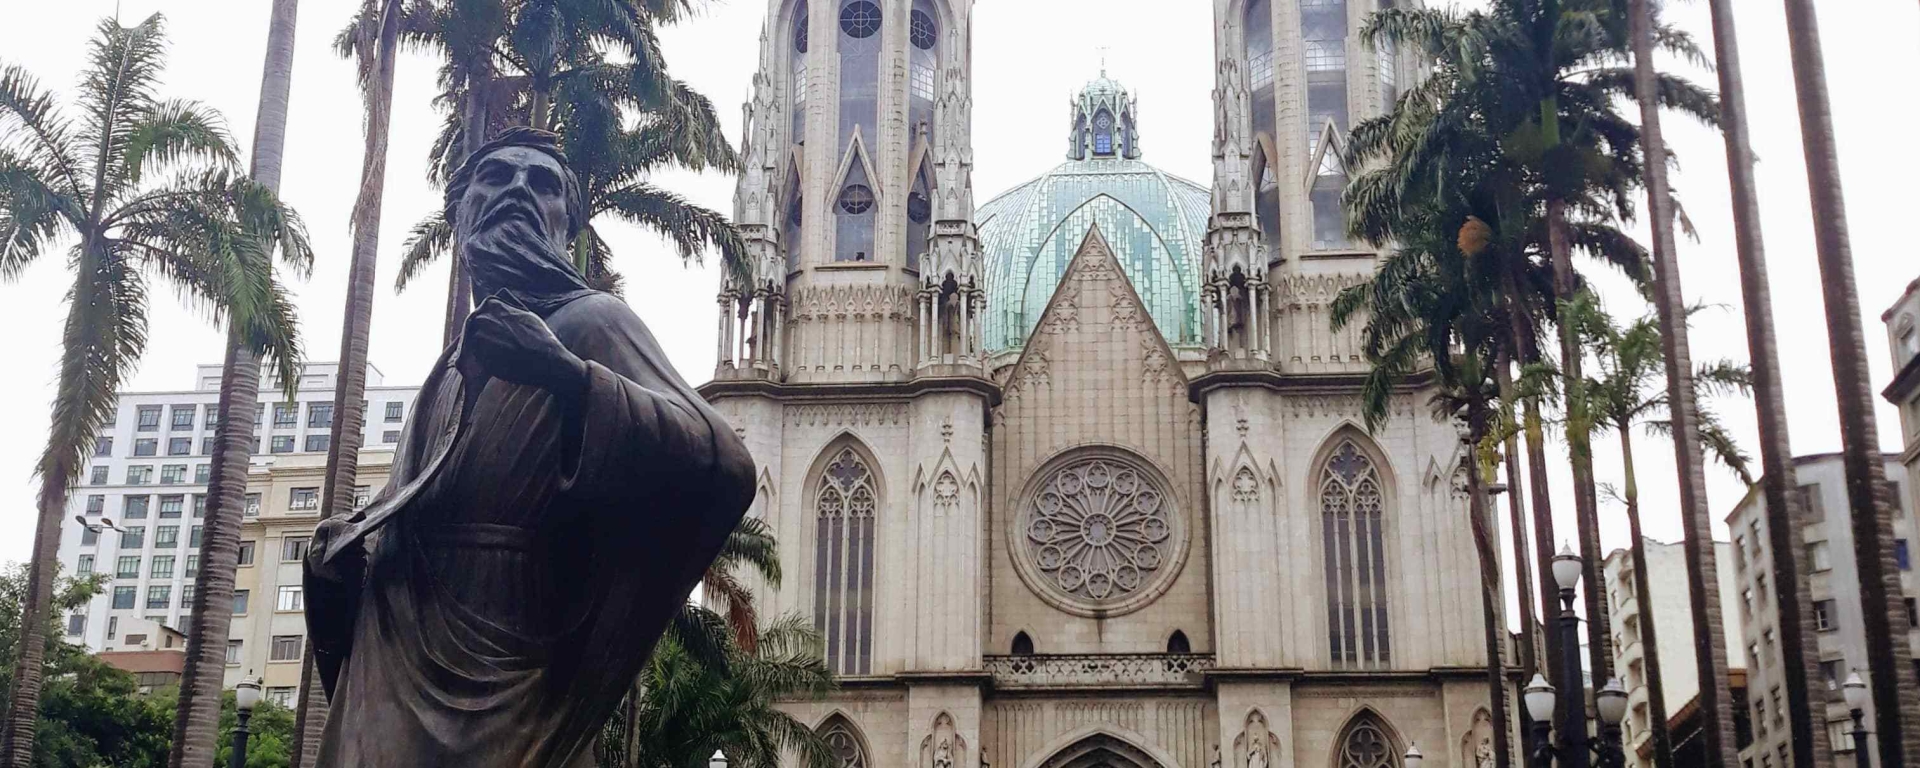 Praça da Sé - Catedral da Sé - Descubra Sampa - Cidade de São Paulo